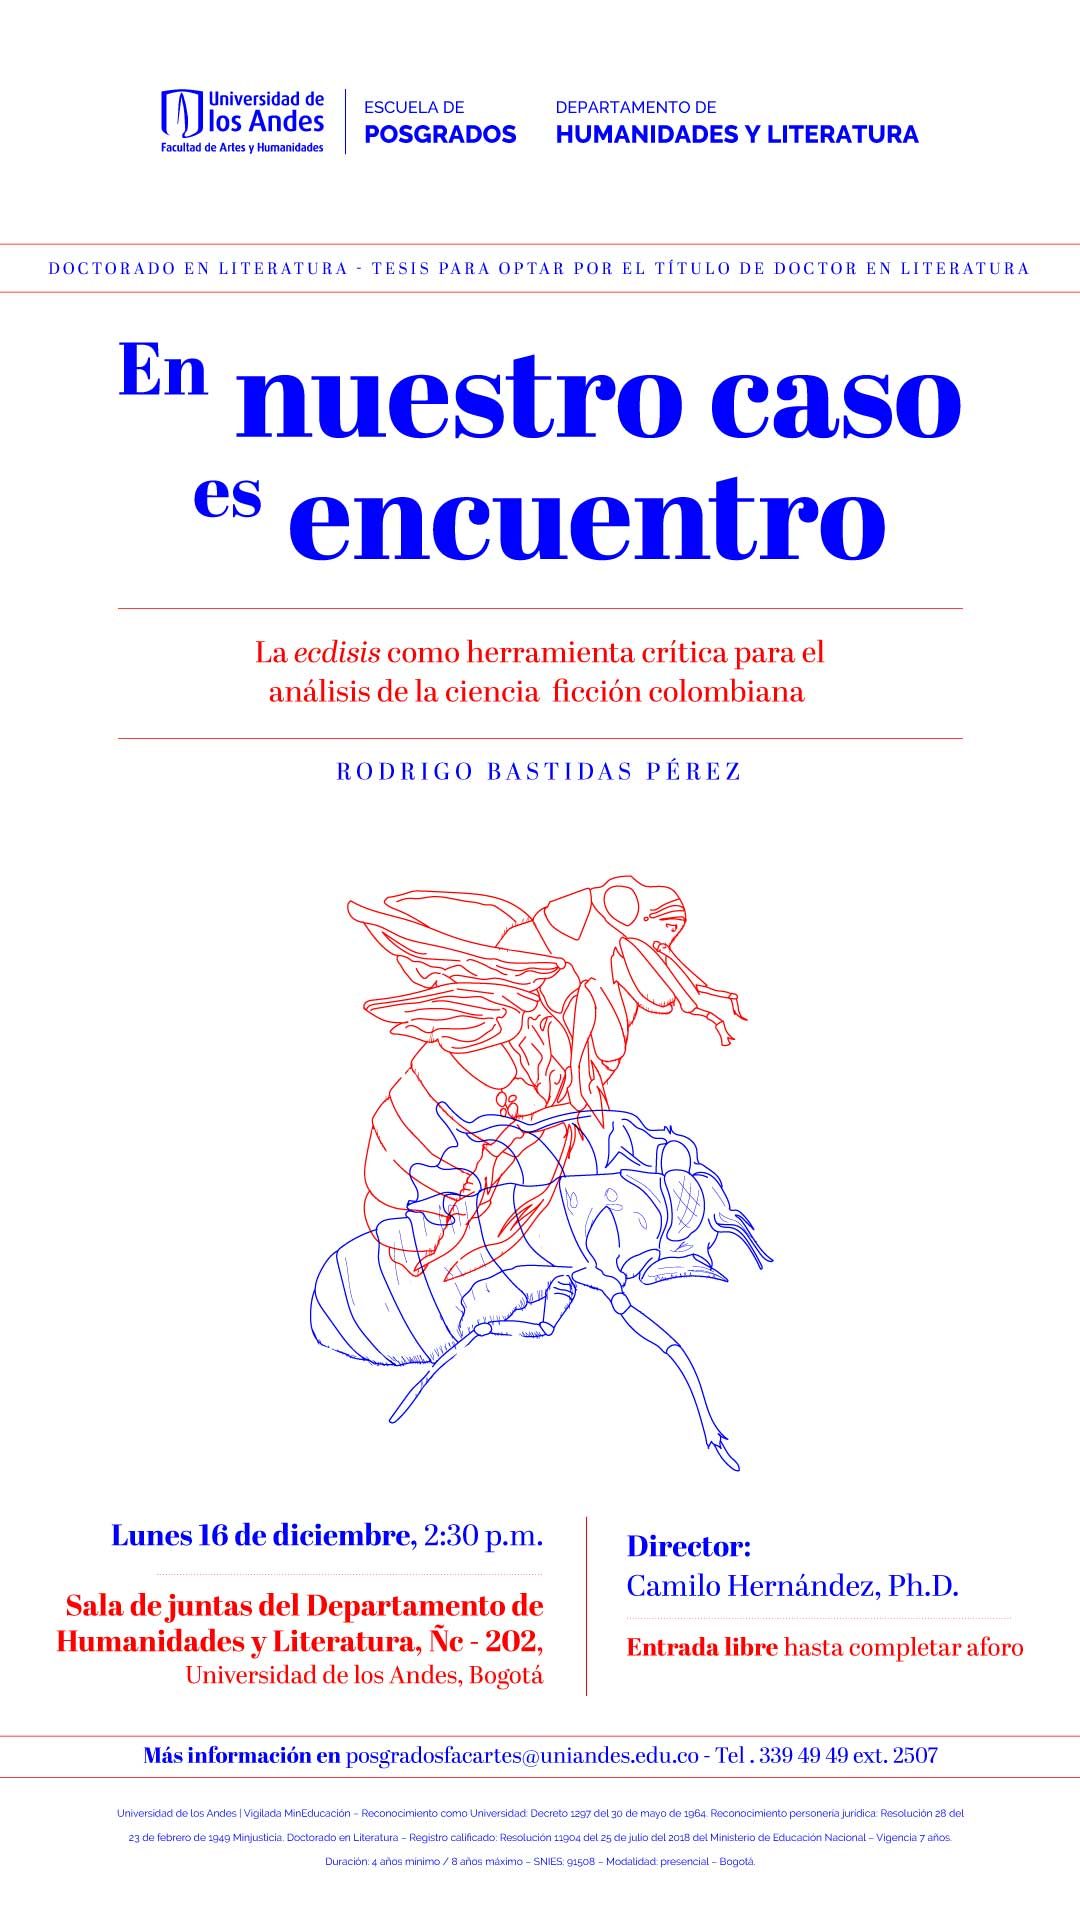 Tesis para optar por el título de doctor en Literatura por Rodrigo Bastidas Pérez